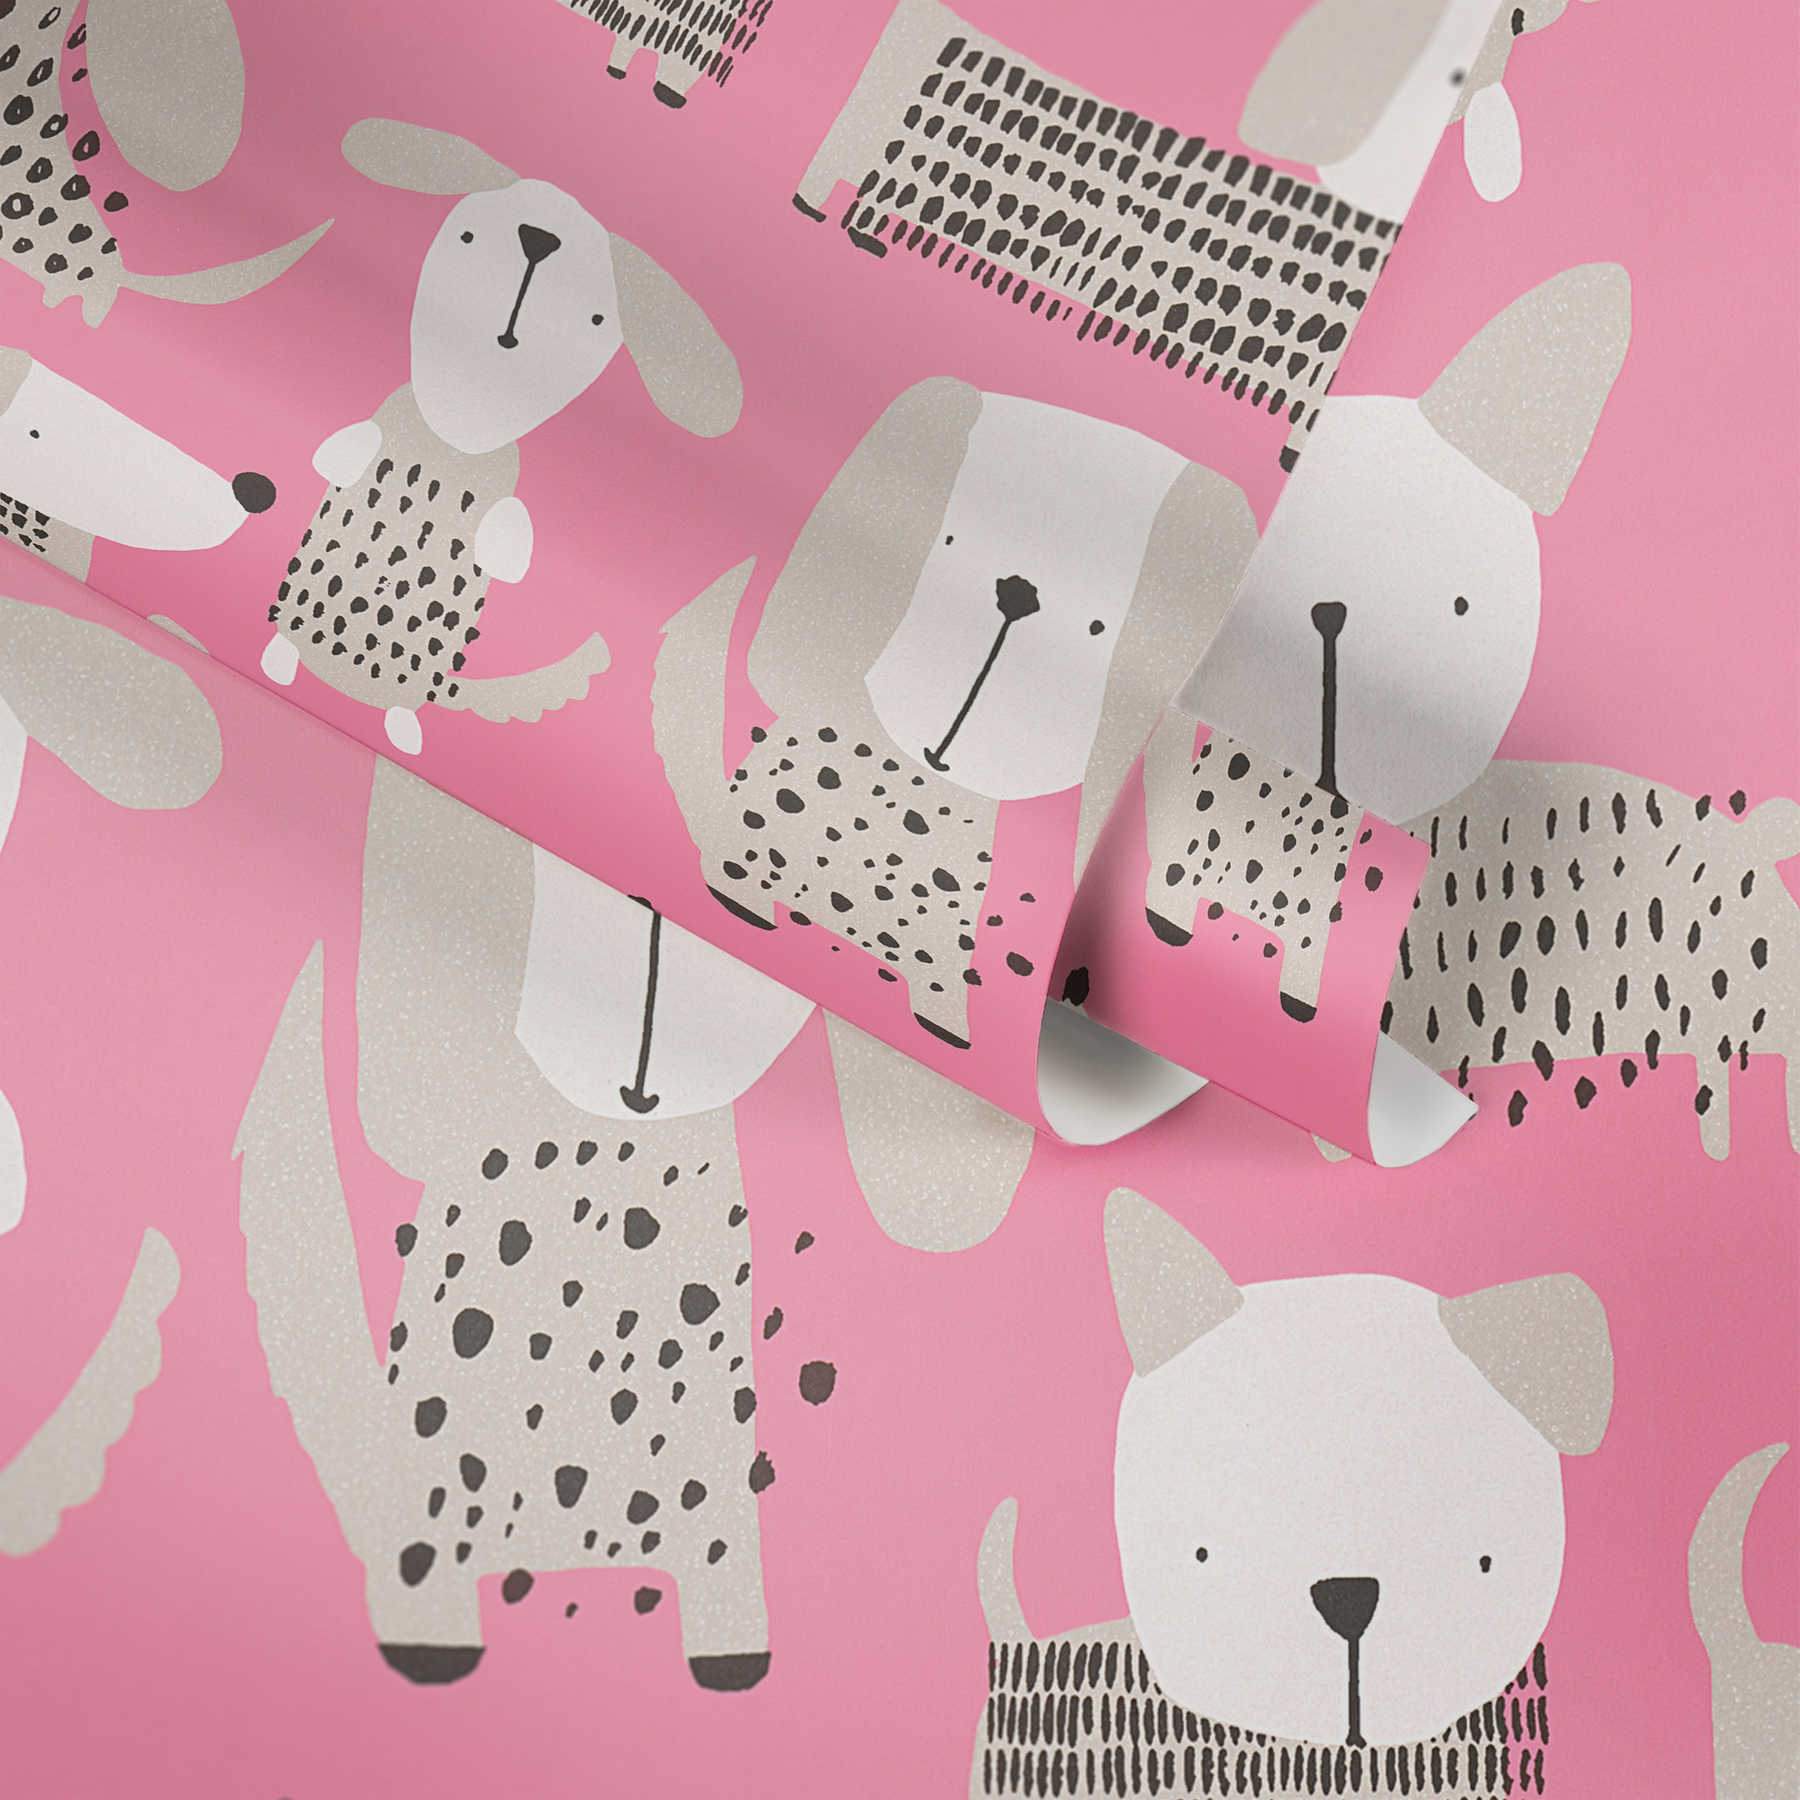             Hunde-Tapete im Comic-Stil für Kinderzimmer – Rosa, Weiß
        